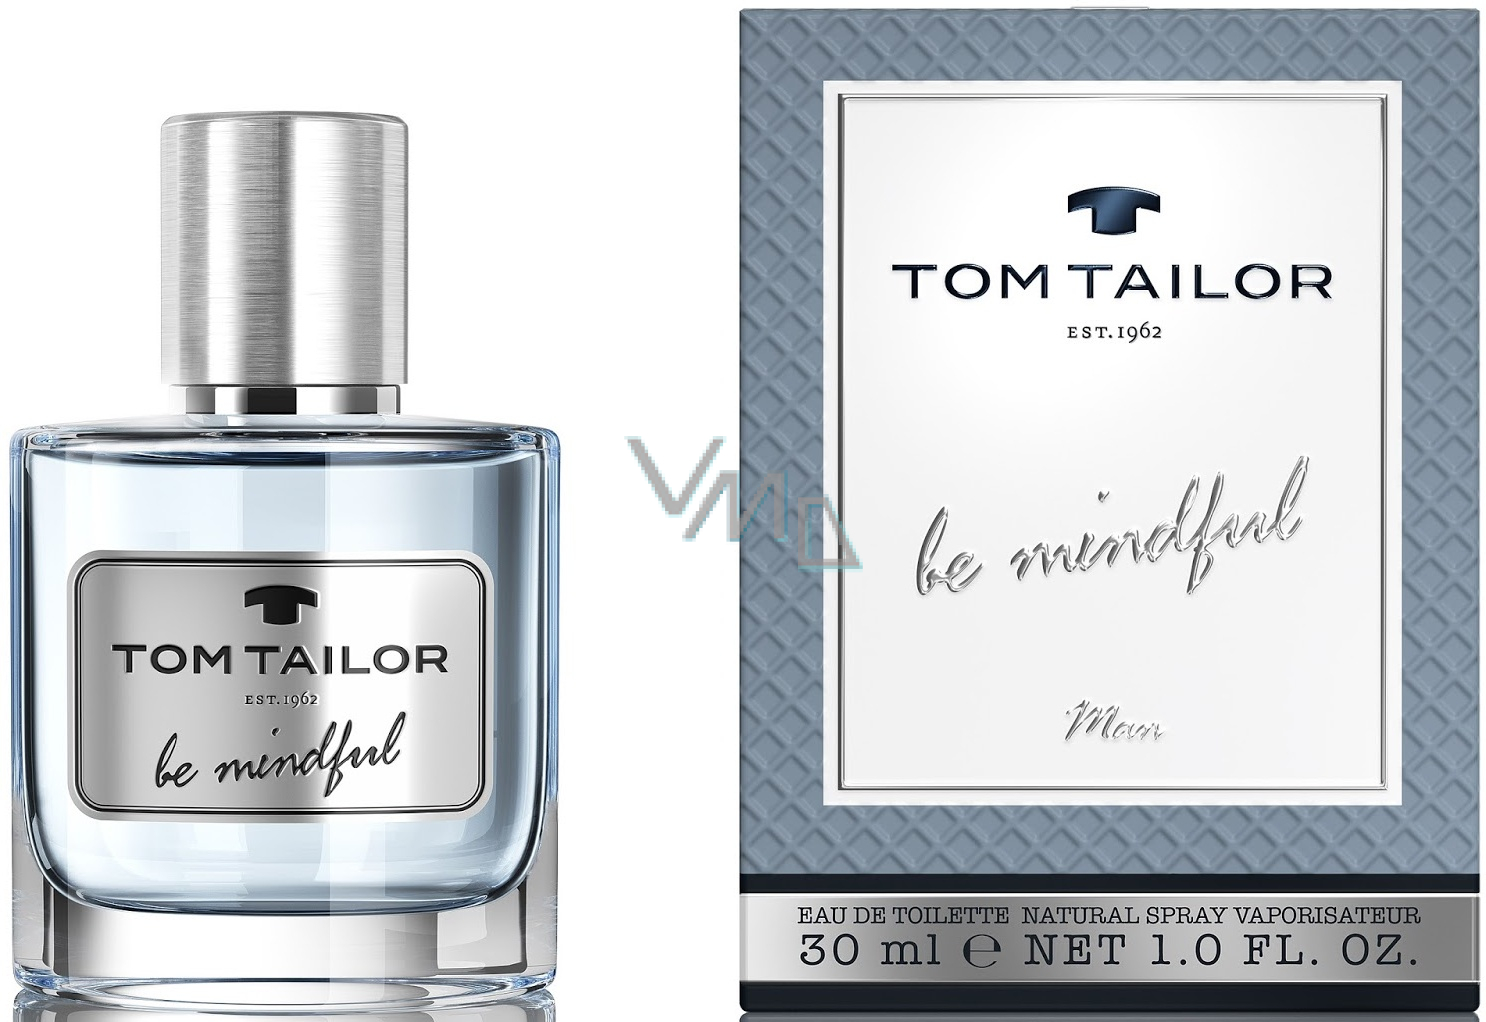 Toilette VMD Man Tom Eau Be de 30 - - drogerie ml Mindful parfumerie Tailor